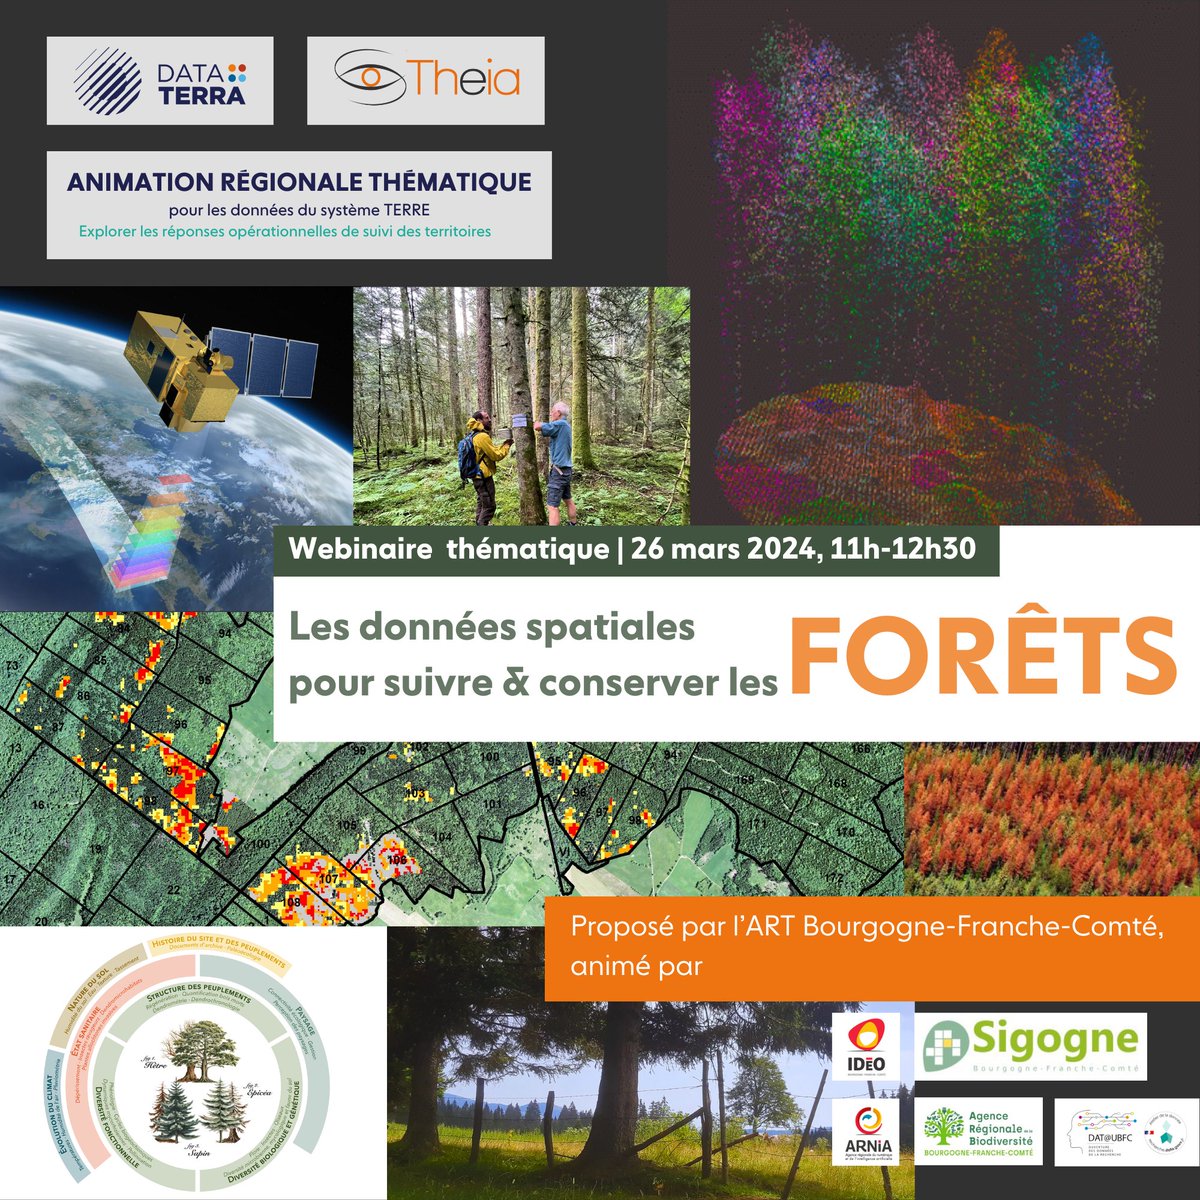 Aujourd'hui, c'est la Journée internationale des forêts 🌲 Cela tombe bien, puisque nous parlerons très bientôt avec @sigogne_bfc et @IDeO_BFC des données spatiales pour suivre et conserver les forêts ! 📅 26/03, 11h-12h30 ▶️ data.ubfc.fr/2024/02/09/web…